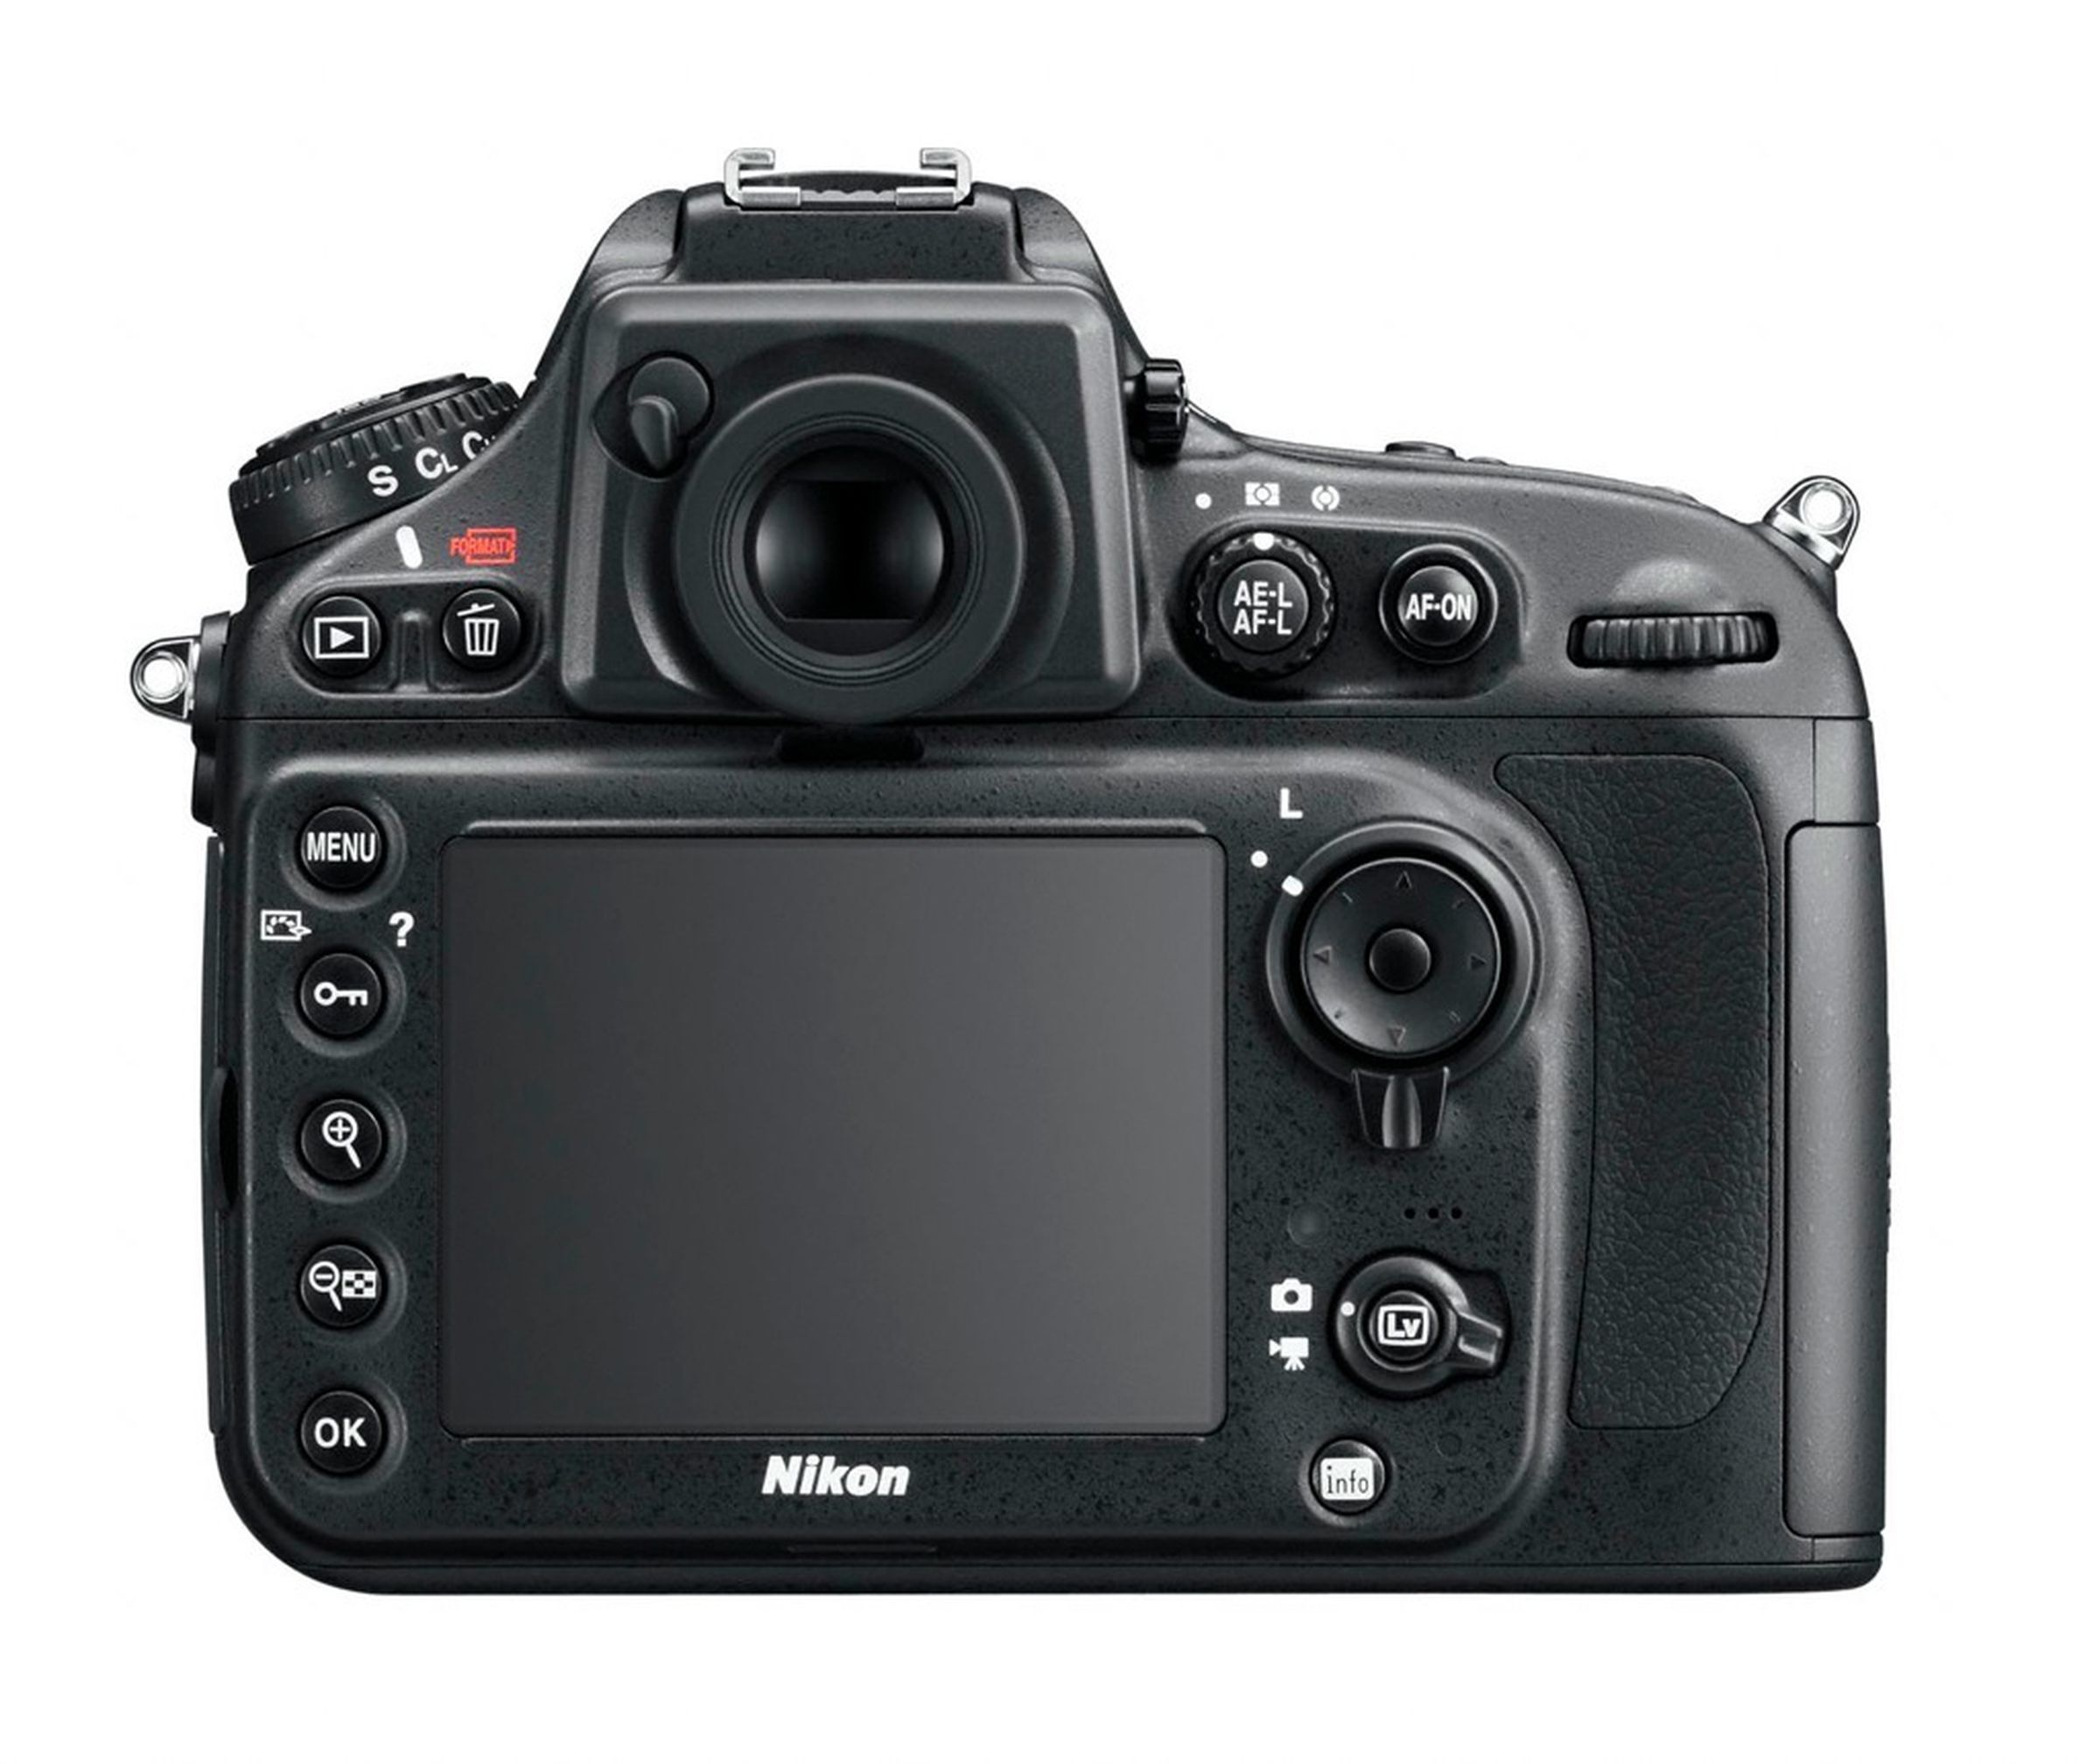 Nikon D800 press pictures